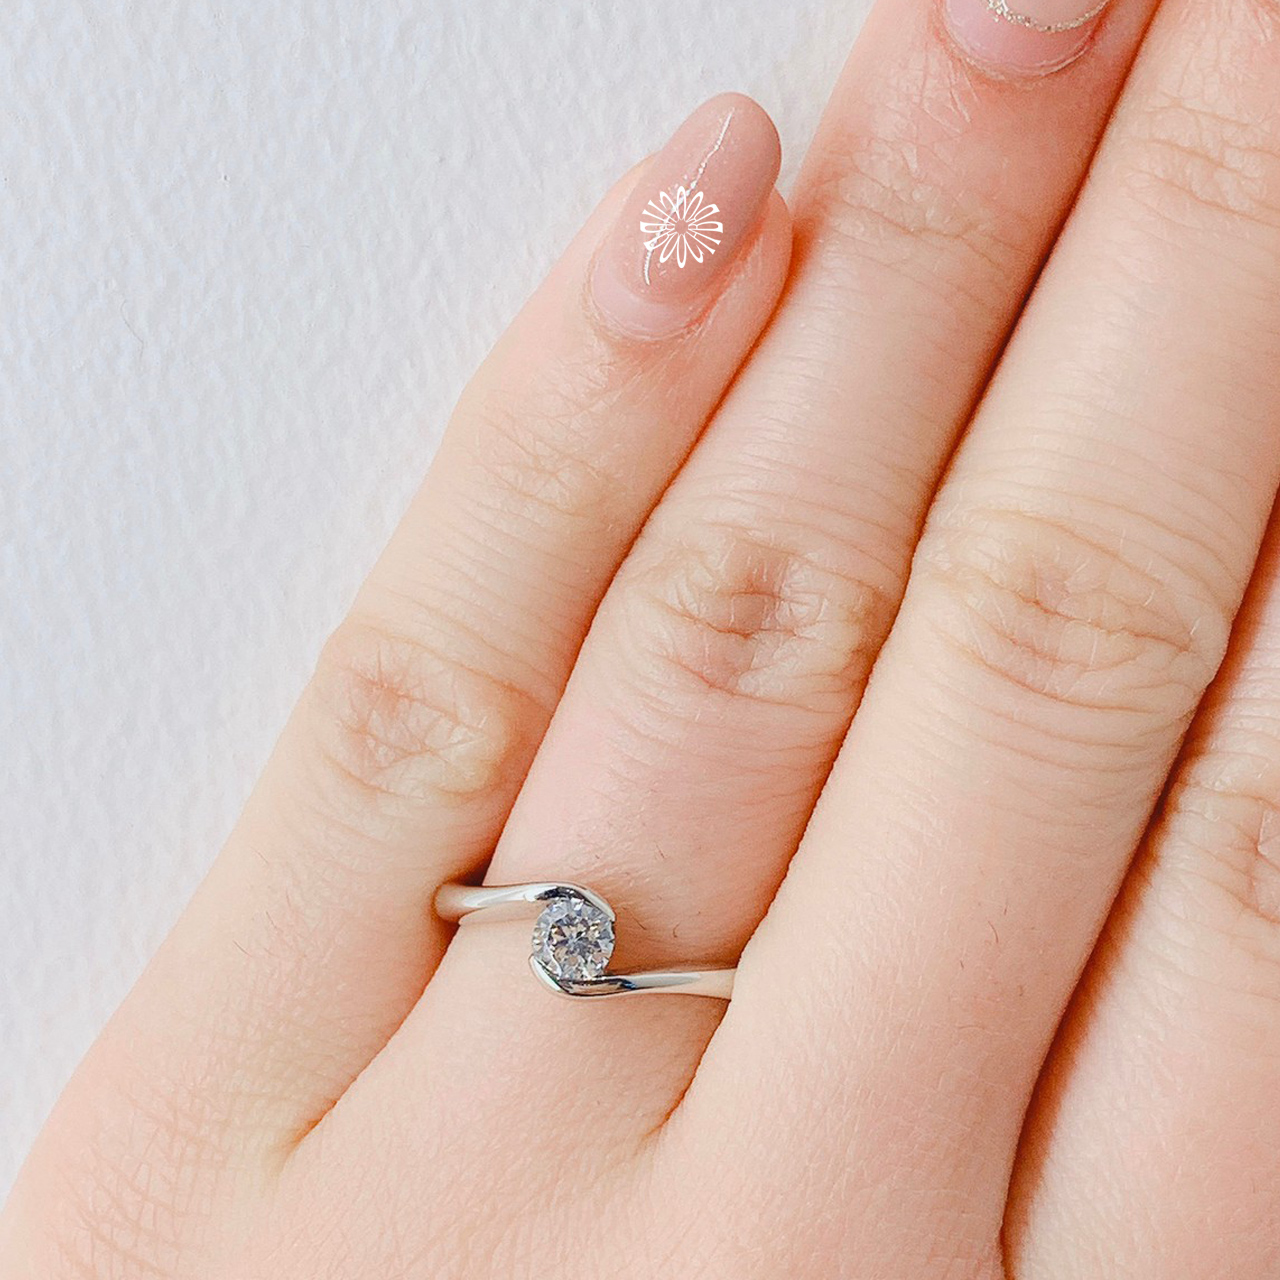 Brooch 婚約指輪 エンゲージリング かわいい シンプル１石ウェーブデザイン 新潟の婚約指輪 結婚指輪 Brooch ブローチ